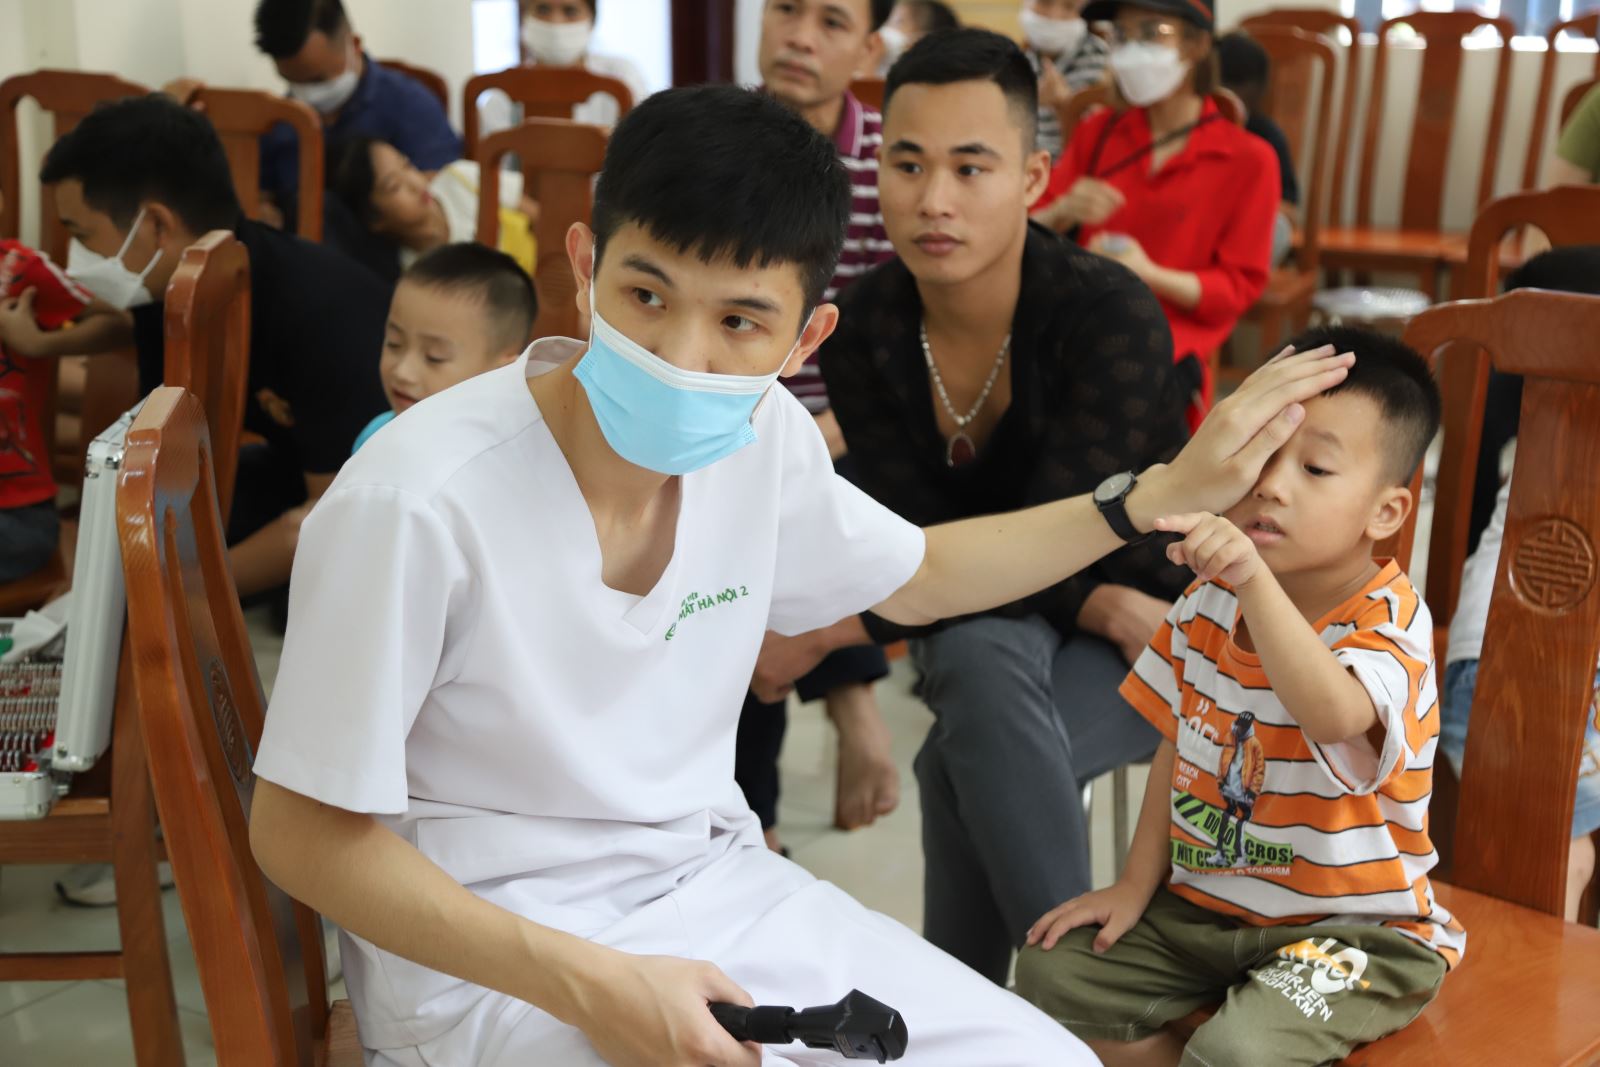 Bệnh viện Mắt Hà Nội 2 khám, chỉ định phẫu thuật các dị tật mắt tại Vĩnh Phúc - Ảnh 1.